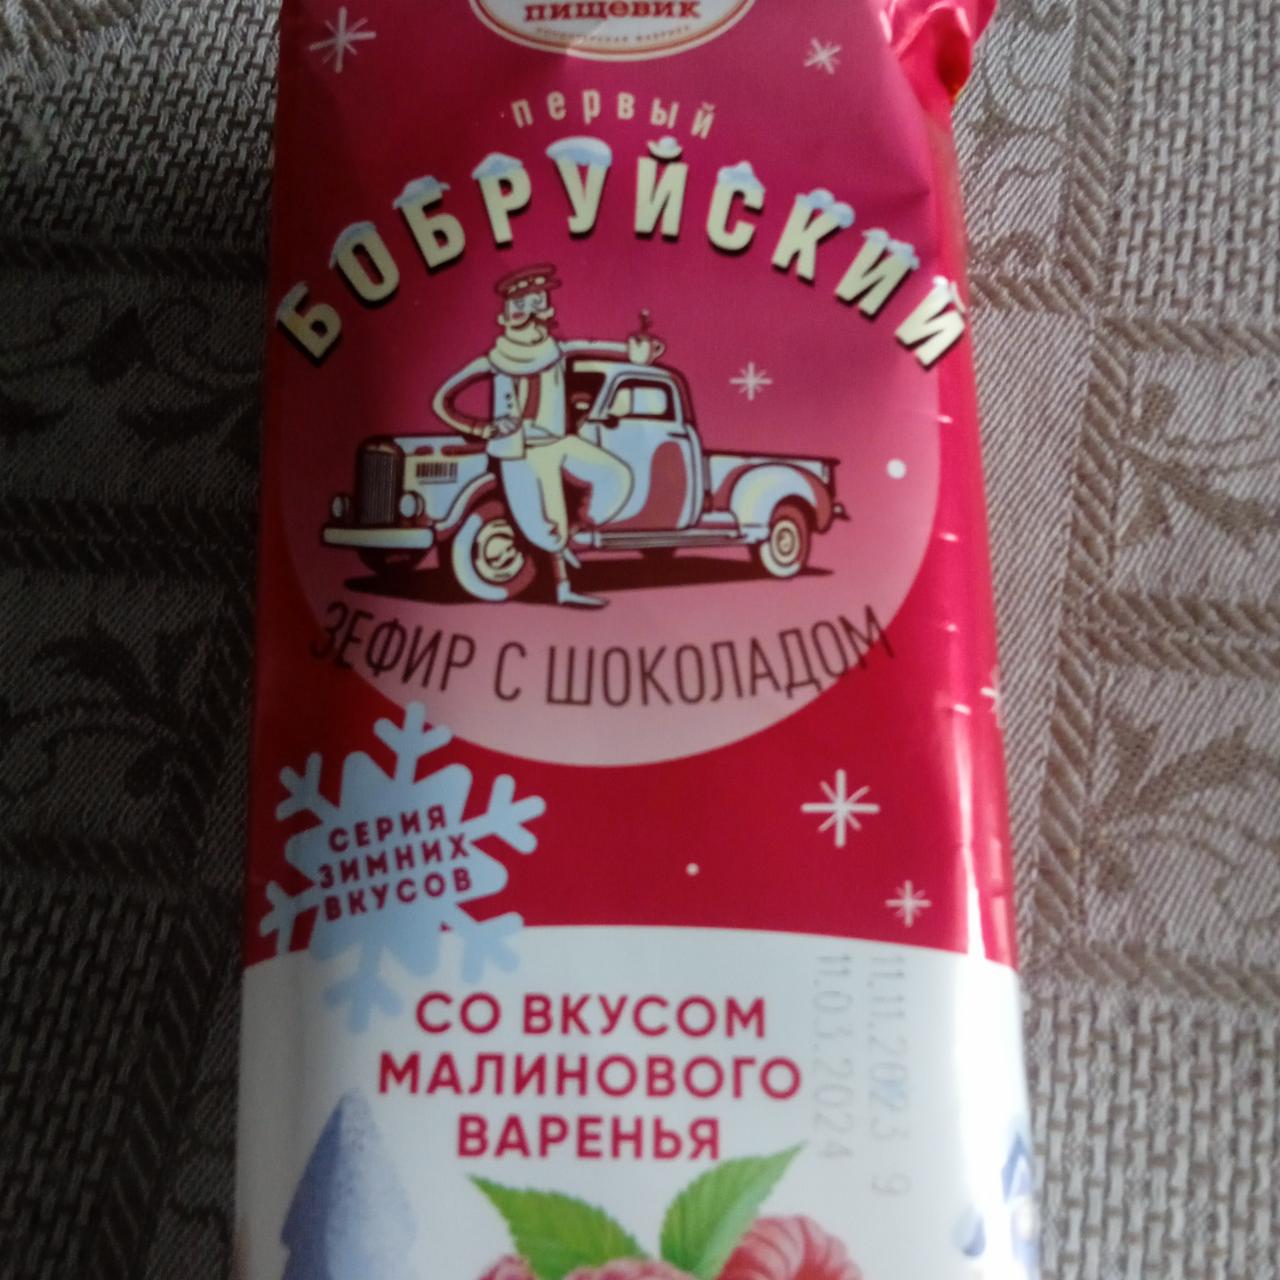 Фото - Зефир бобруйский со вкусом малинового варенья Красный пищевик